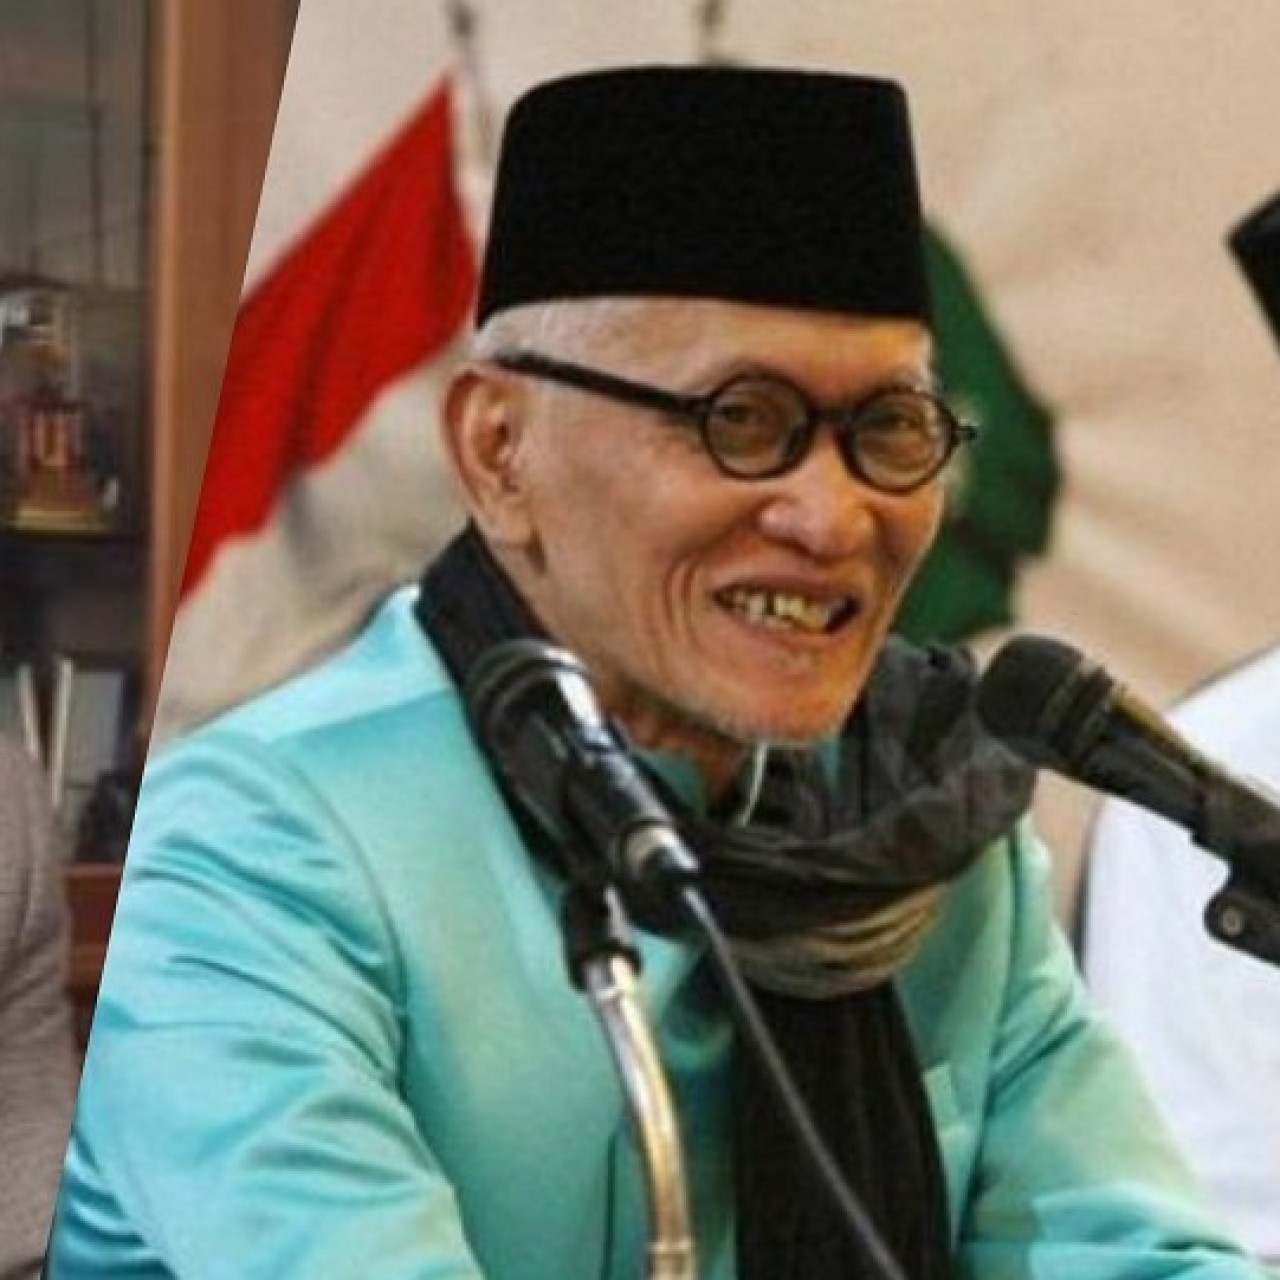 Harapan NU Lampung pada Duet Kiai Miftah dan Gus Yahya